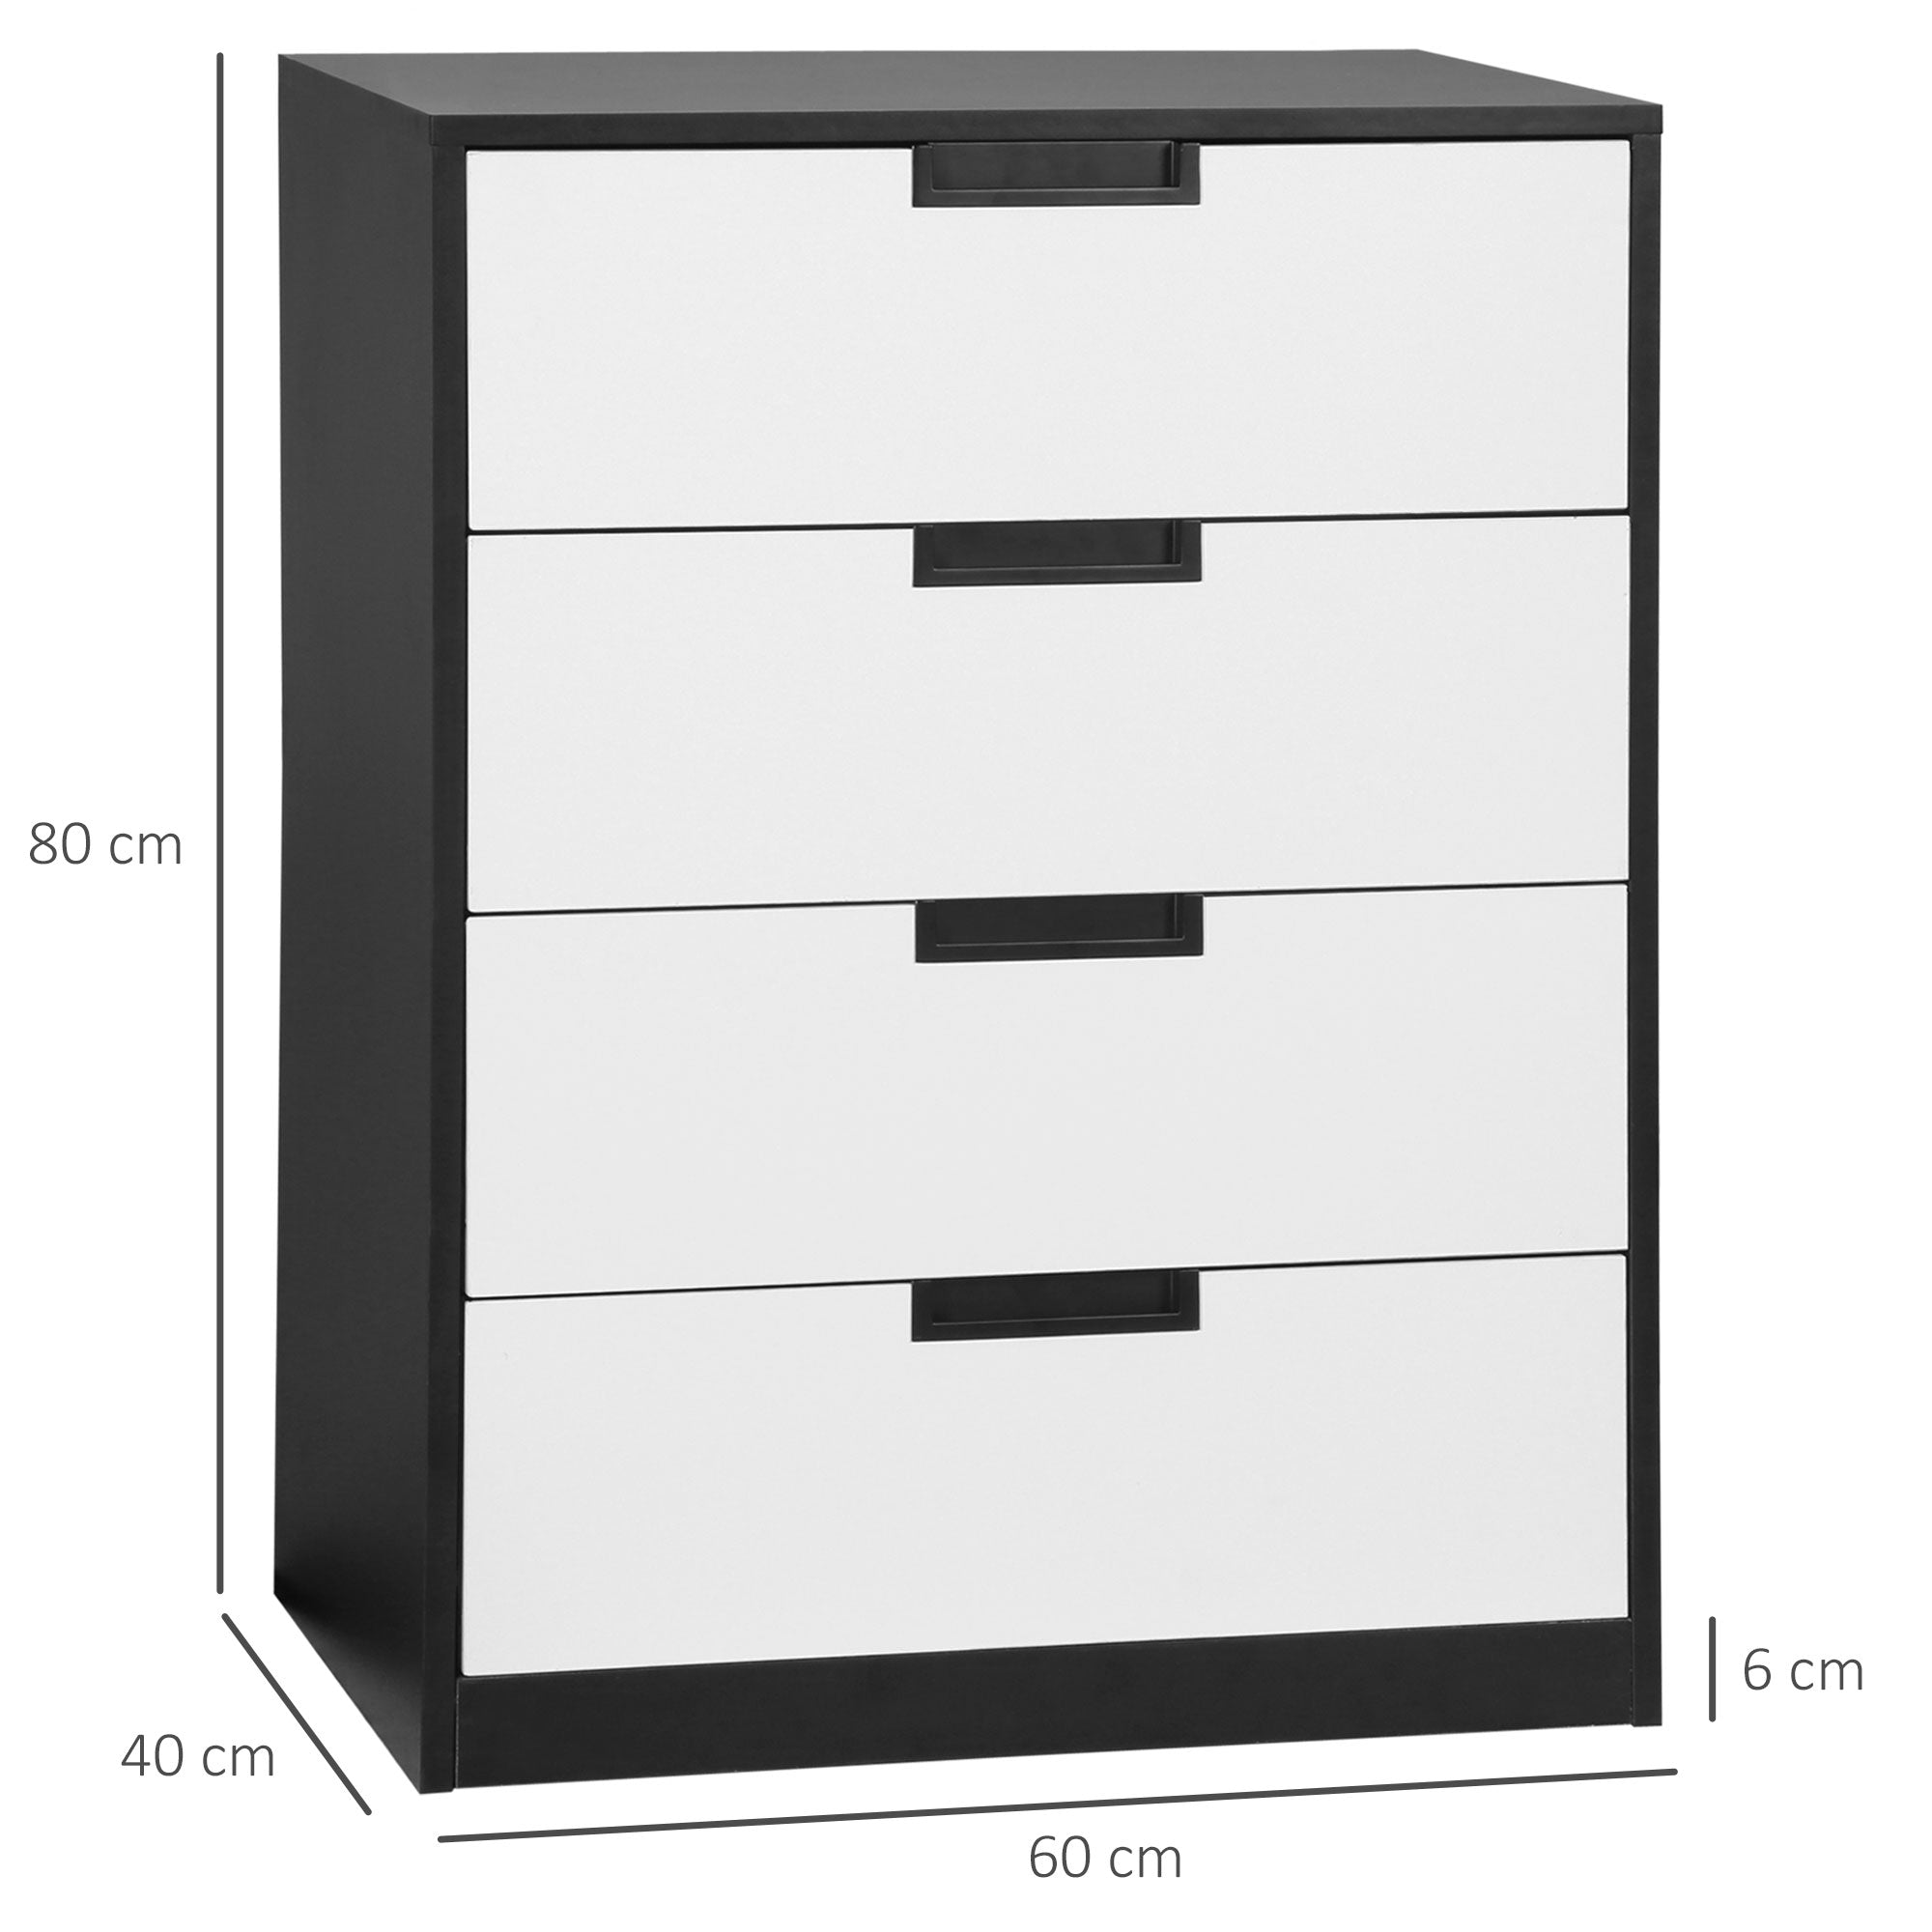 Drawer Chest, 4-Drawer Storage Cabinet Organiser for Bedroom, Living Room, 60cmx40cmx80cm, White and Black-2